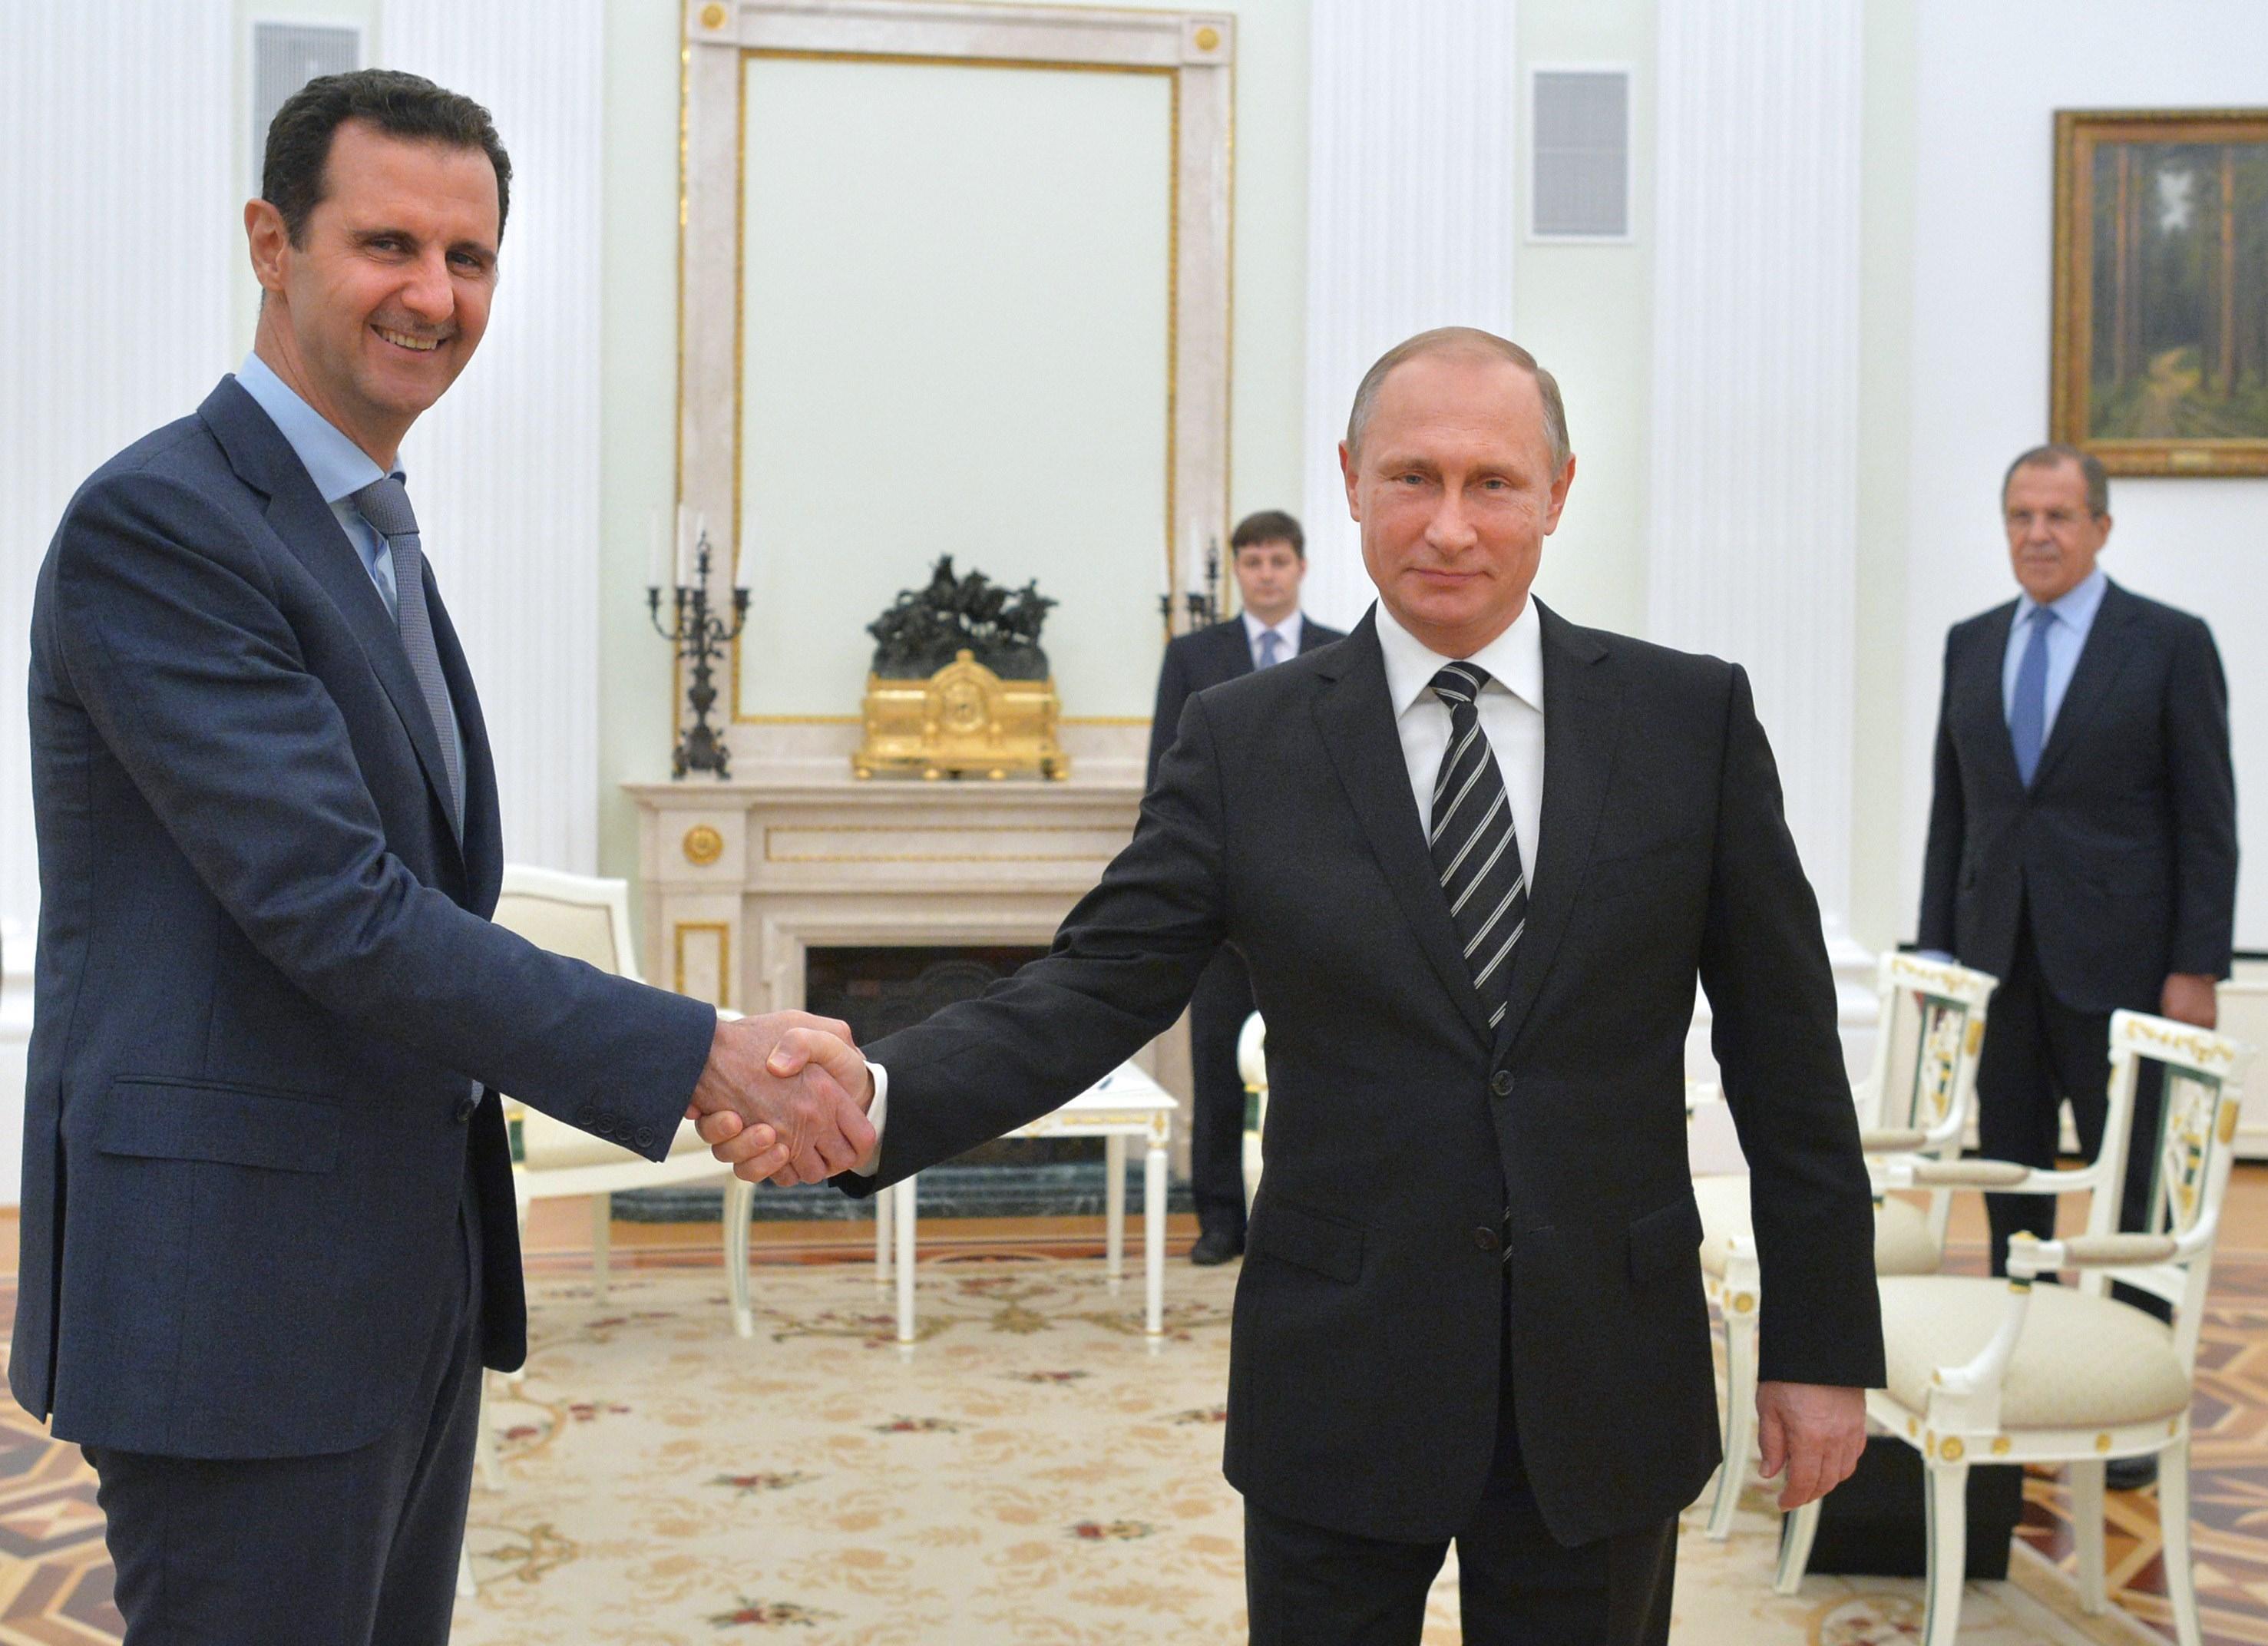 Syriens president Bashar al-Assad var på hemligt blixtbesök hos Rysslands president Vladimir Putin i Kreml på tisdagen. Det var första gången Assad lämnade Syrien sedan konfliktens början 2011. (Foto: Alexey Druzhinin/AFP/Getty Image)